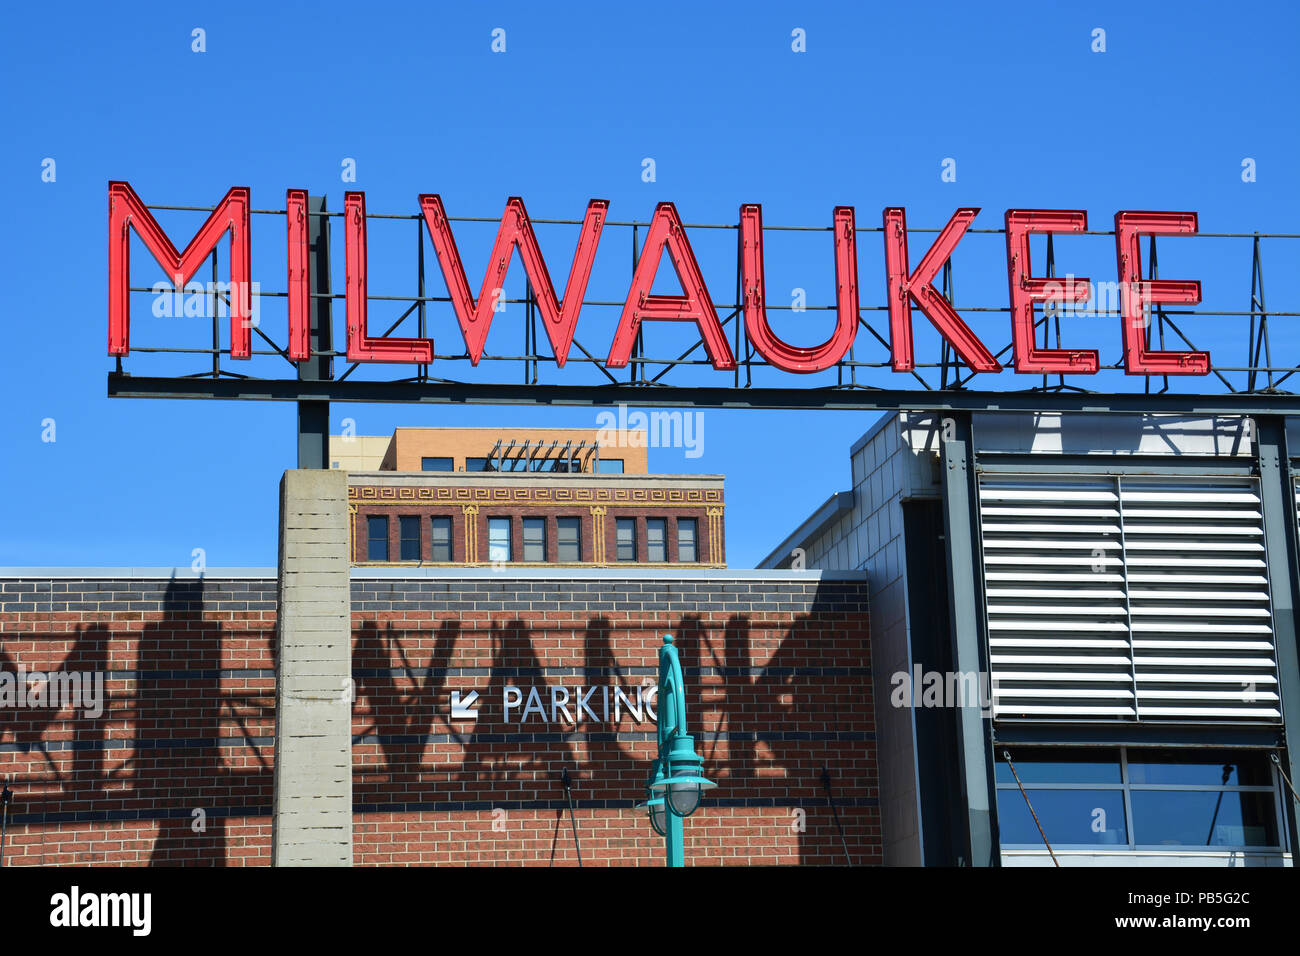 Avec une population d'un peu moins de 600 000 Milwaukee est la plus grande ville de l'état du Wisconsin et l'un des plus grands dans le Midwest des États-Unis Banque D'Images